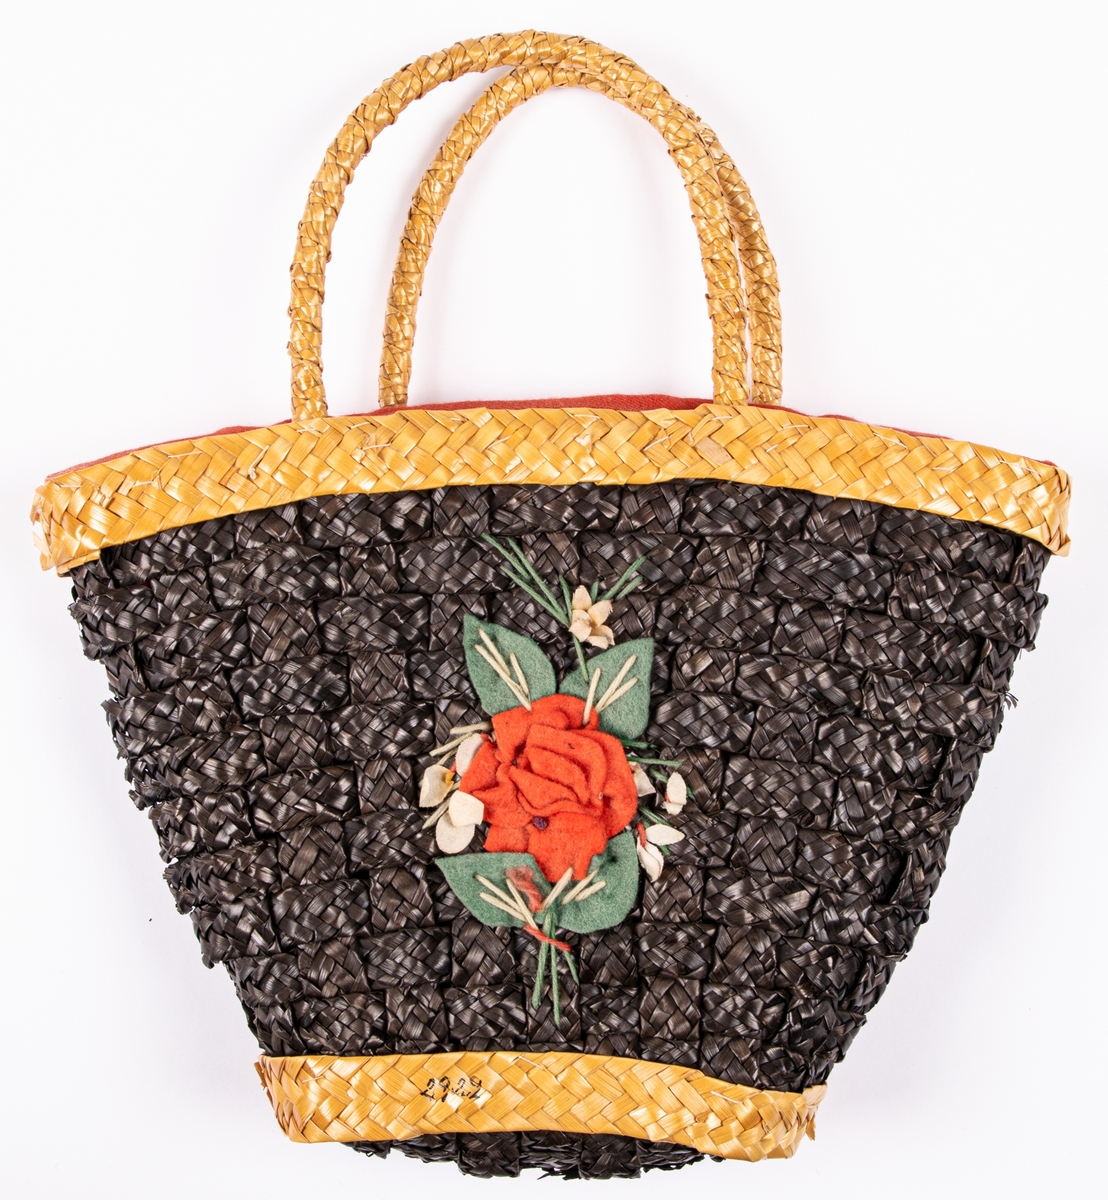 Handväska i form av en flätad korg, rött tygfoder, påsydda blommor av ylle.